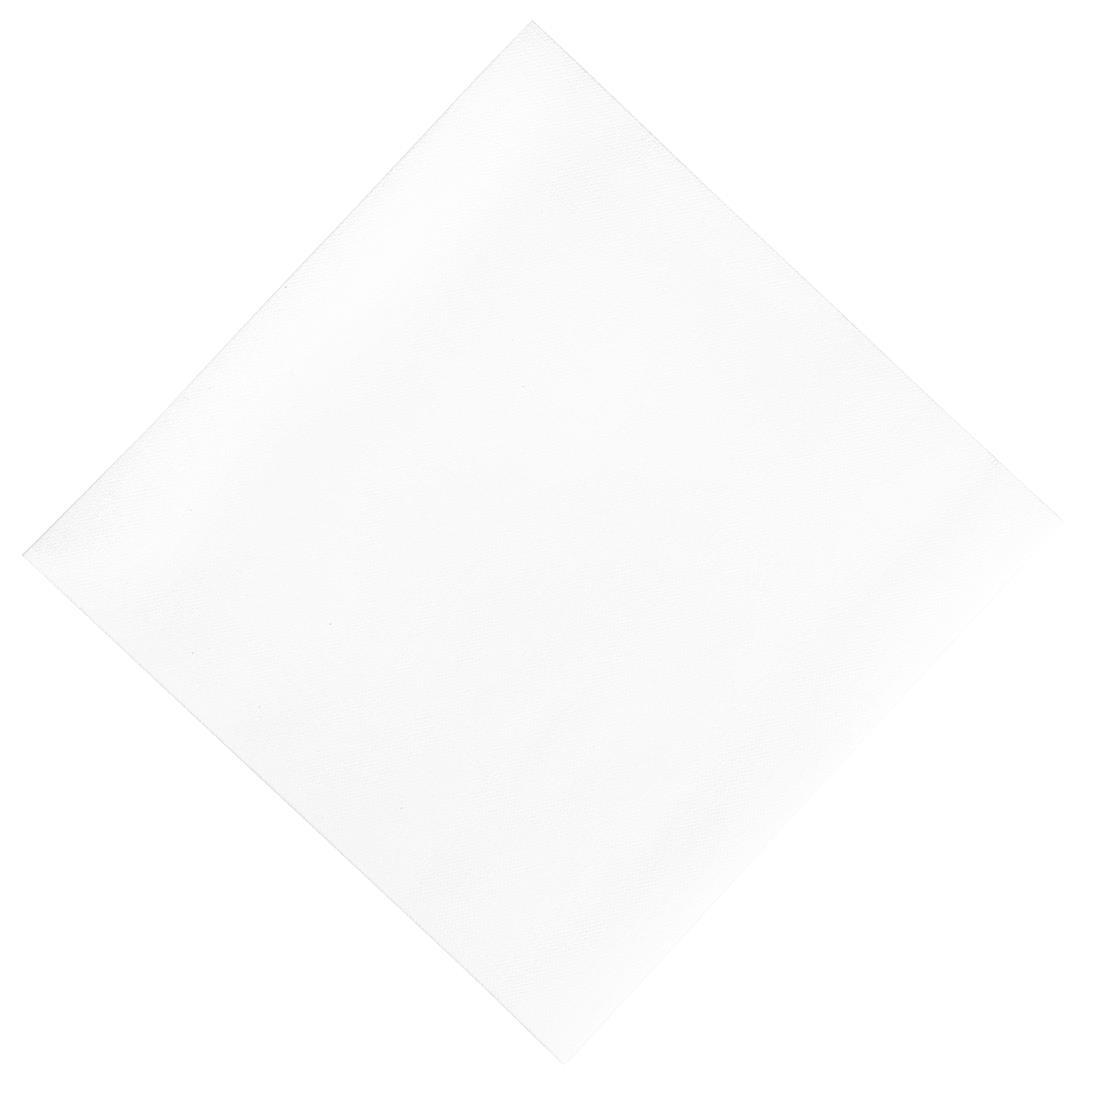 Duni Dinner Napkin White 40x40cm 1ply 1/8 Fold (Pack of 720) - GJ121  - 1